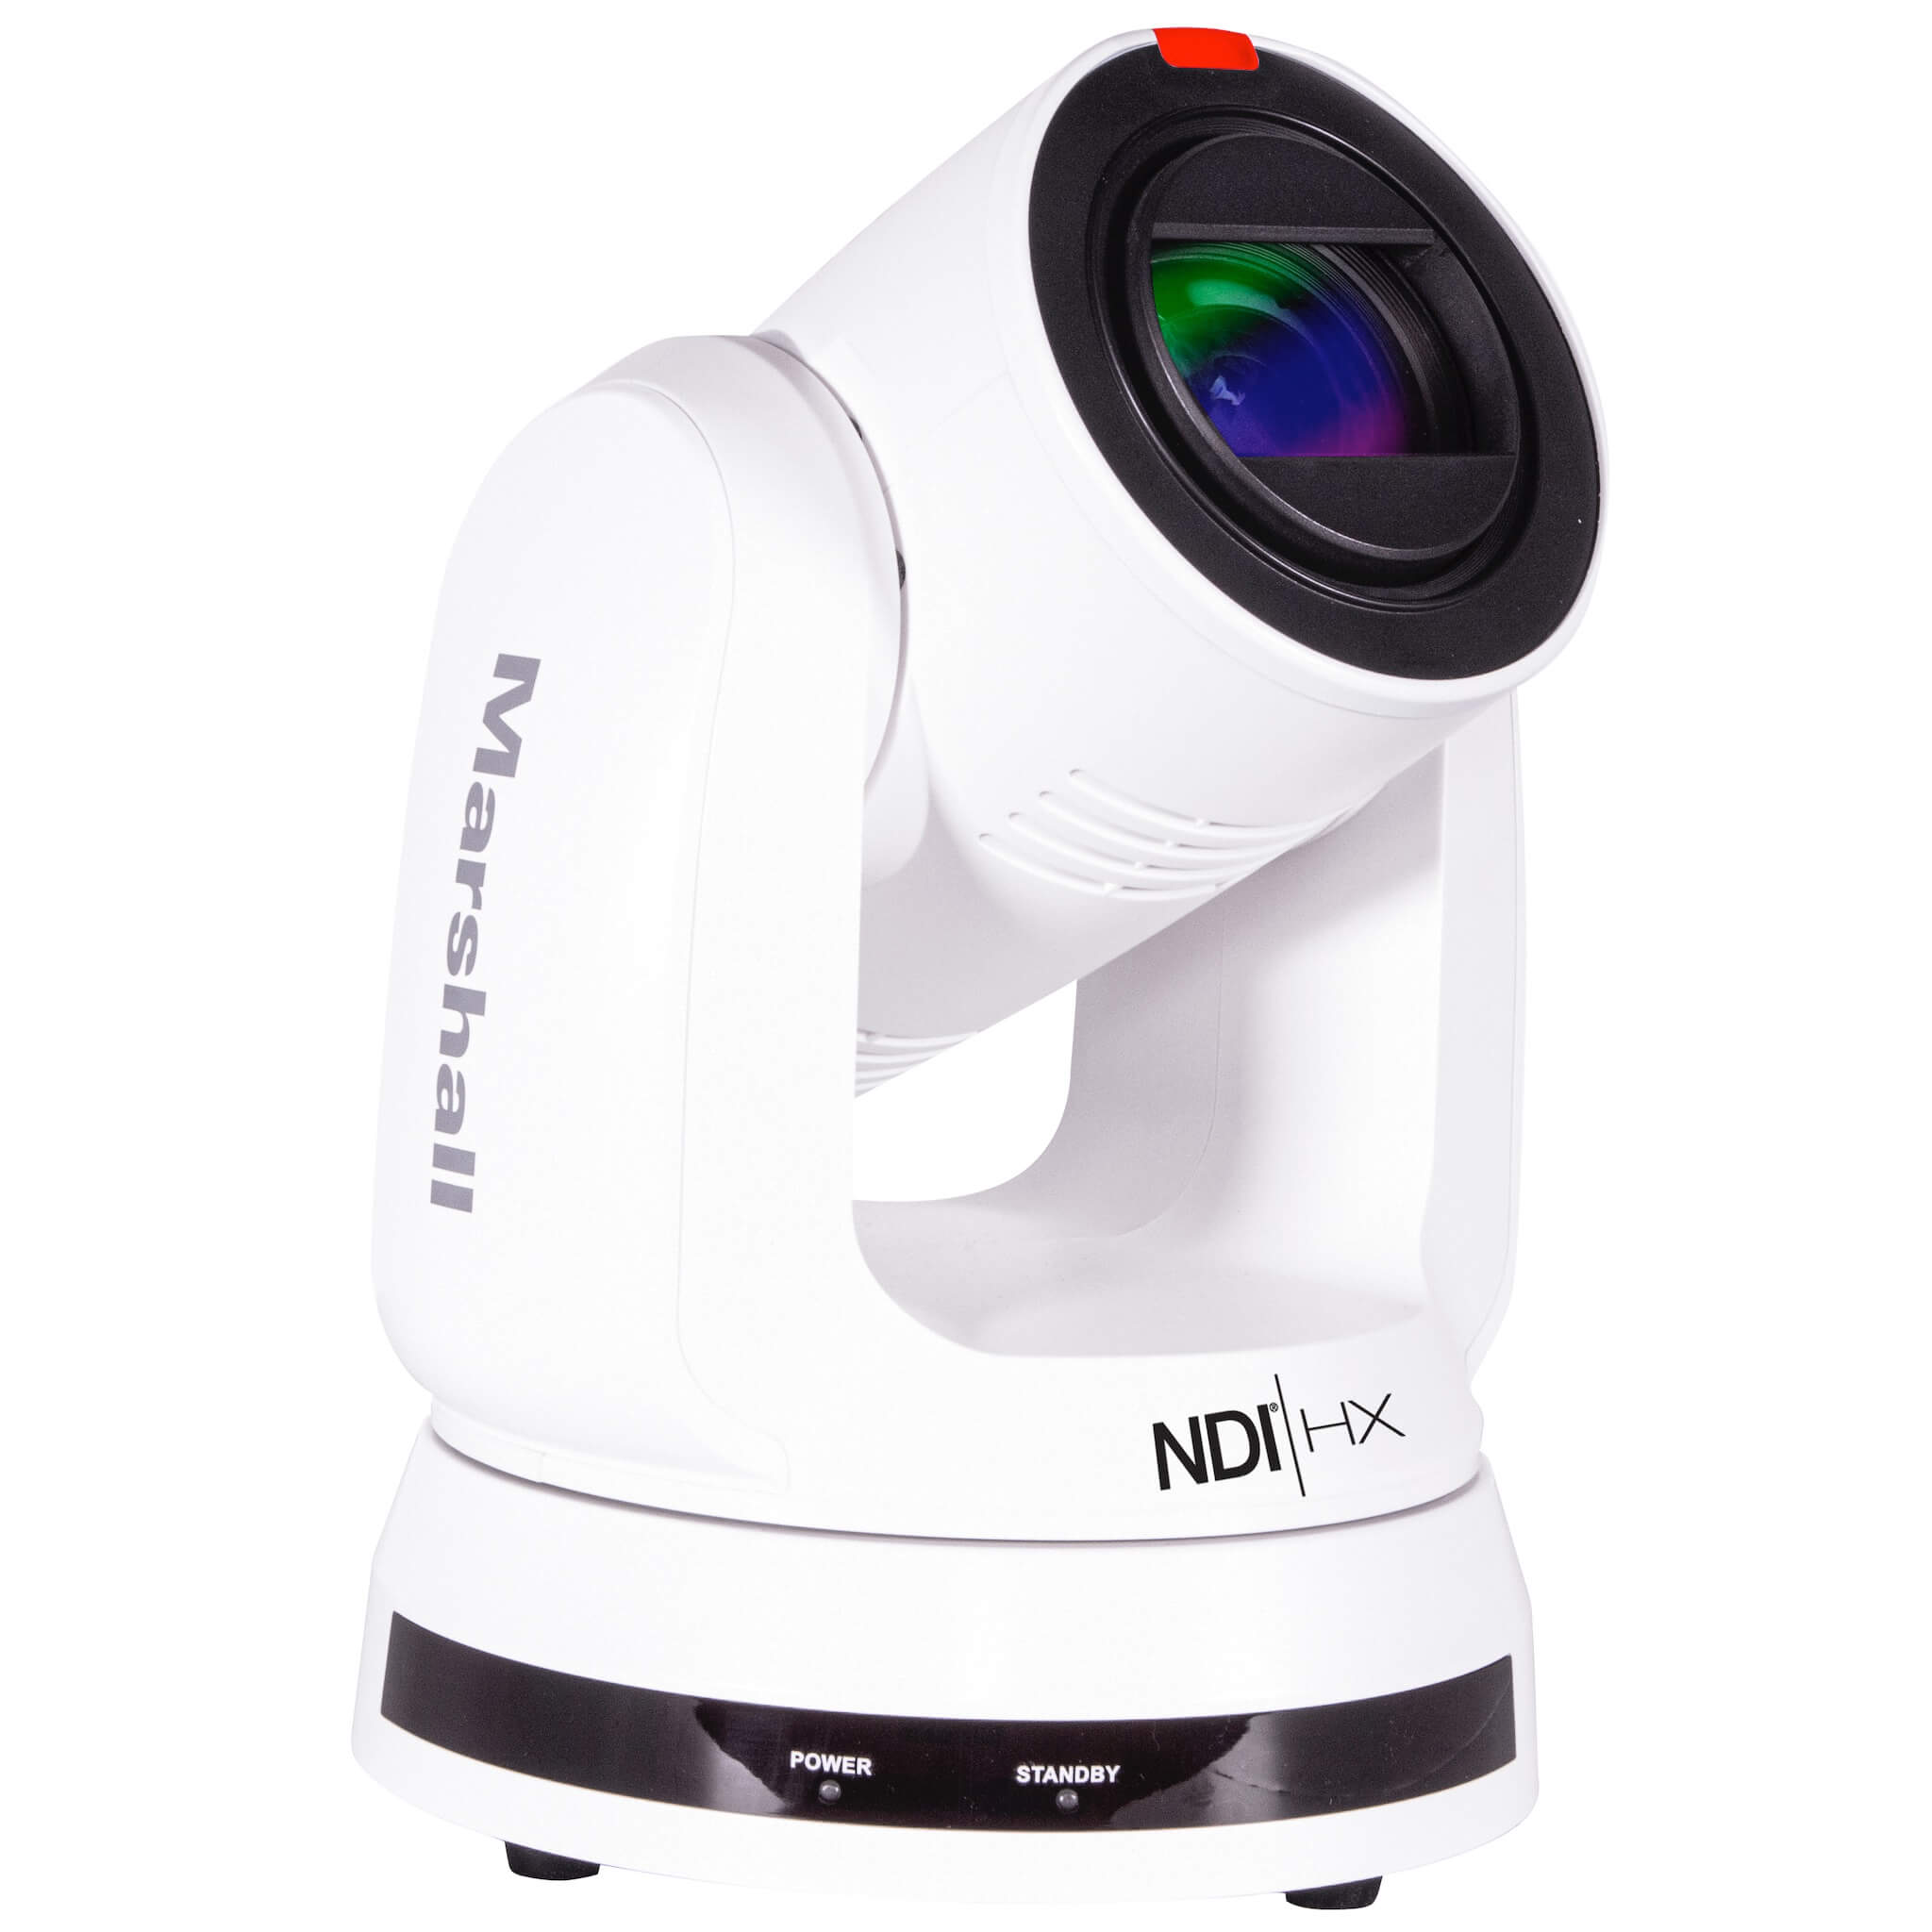 Marshall CV730-NDIW - UHD60 NDI|HX PTZ Camera with 30x Optical Zoom, right